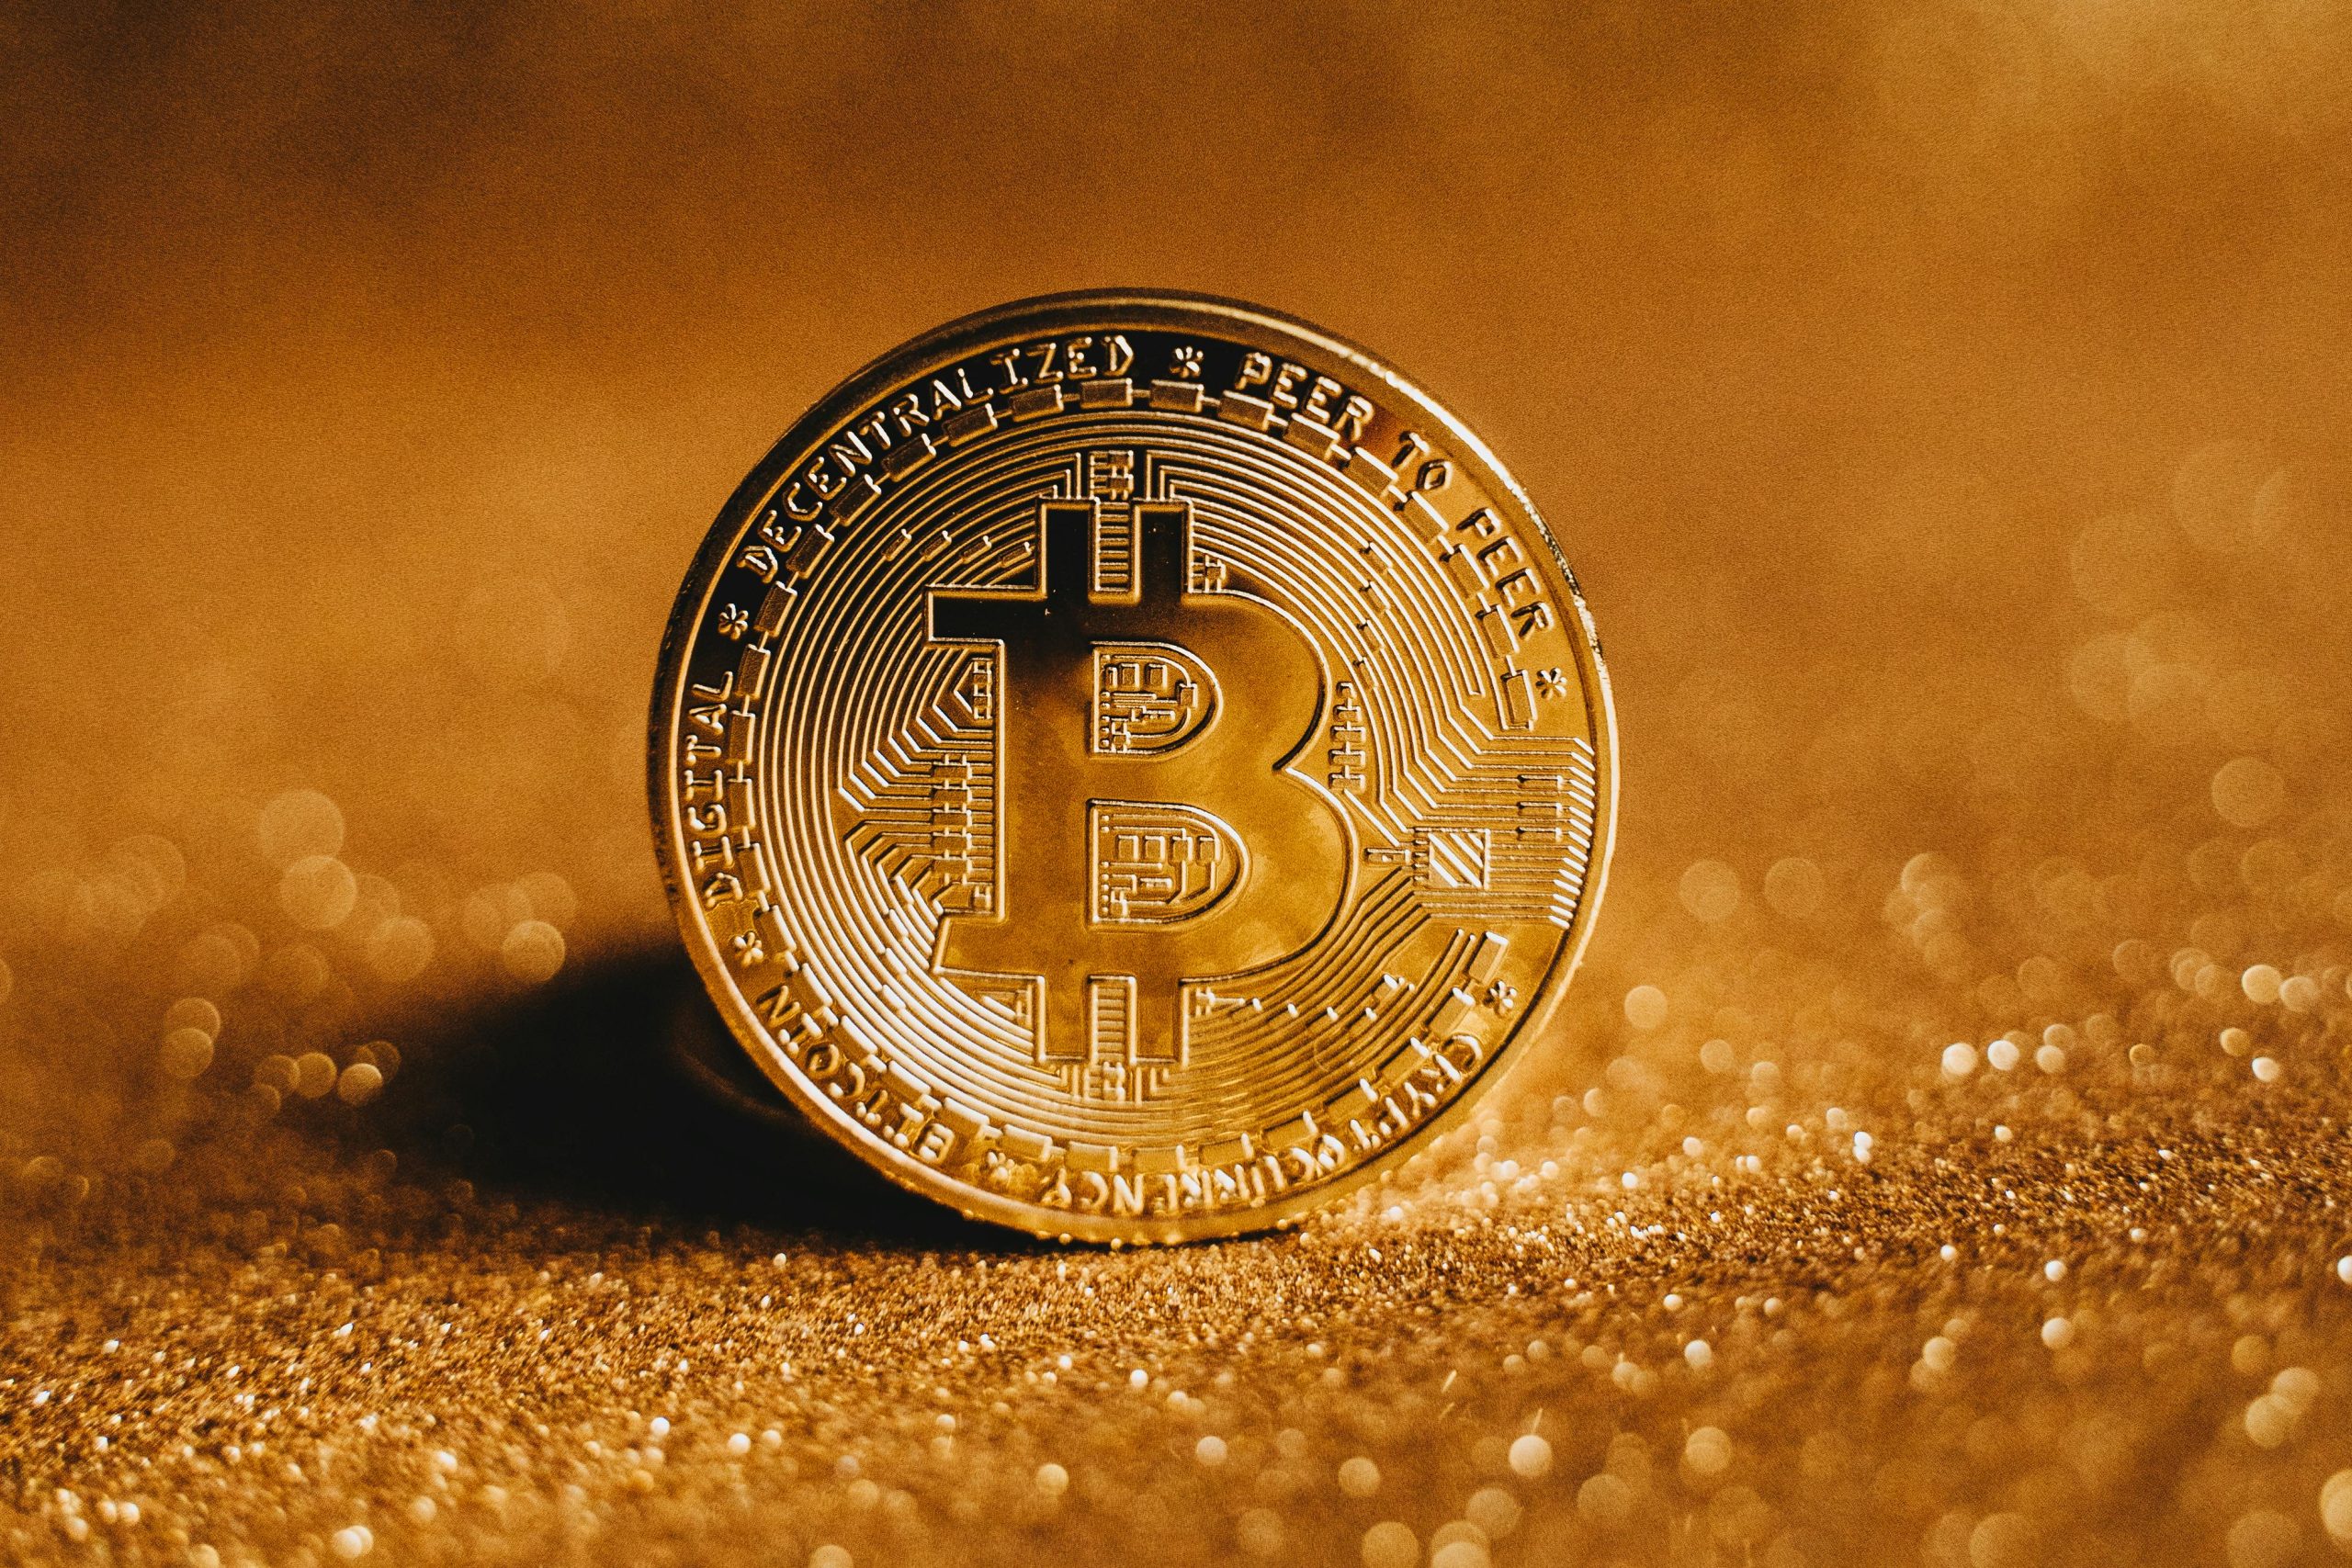 Bitcoin coin, b mit strichen die orthogonal abgehene oben und unten, je zwei. Darumherum linien und rechtecke die platine symbolisieren